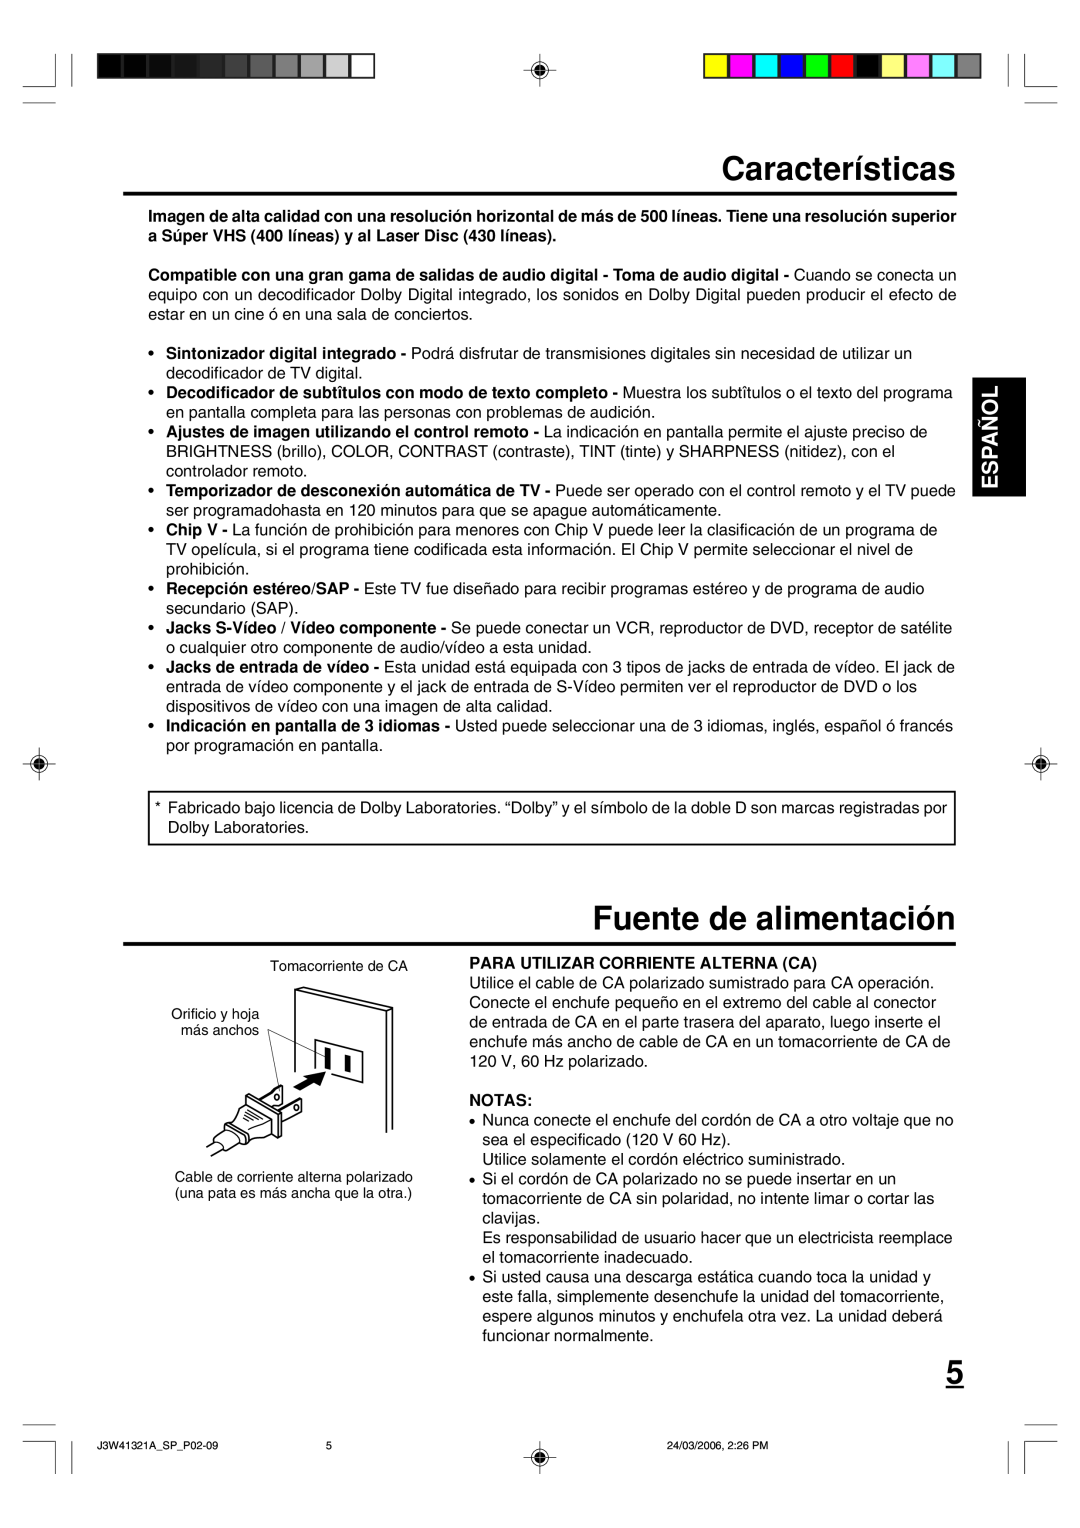 Zenith J3W41321A warranty Características, Fuente de alimentación, Español, Para Utilizar Corriente Alterna Ca, Notas 